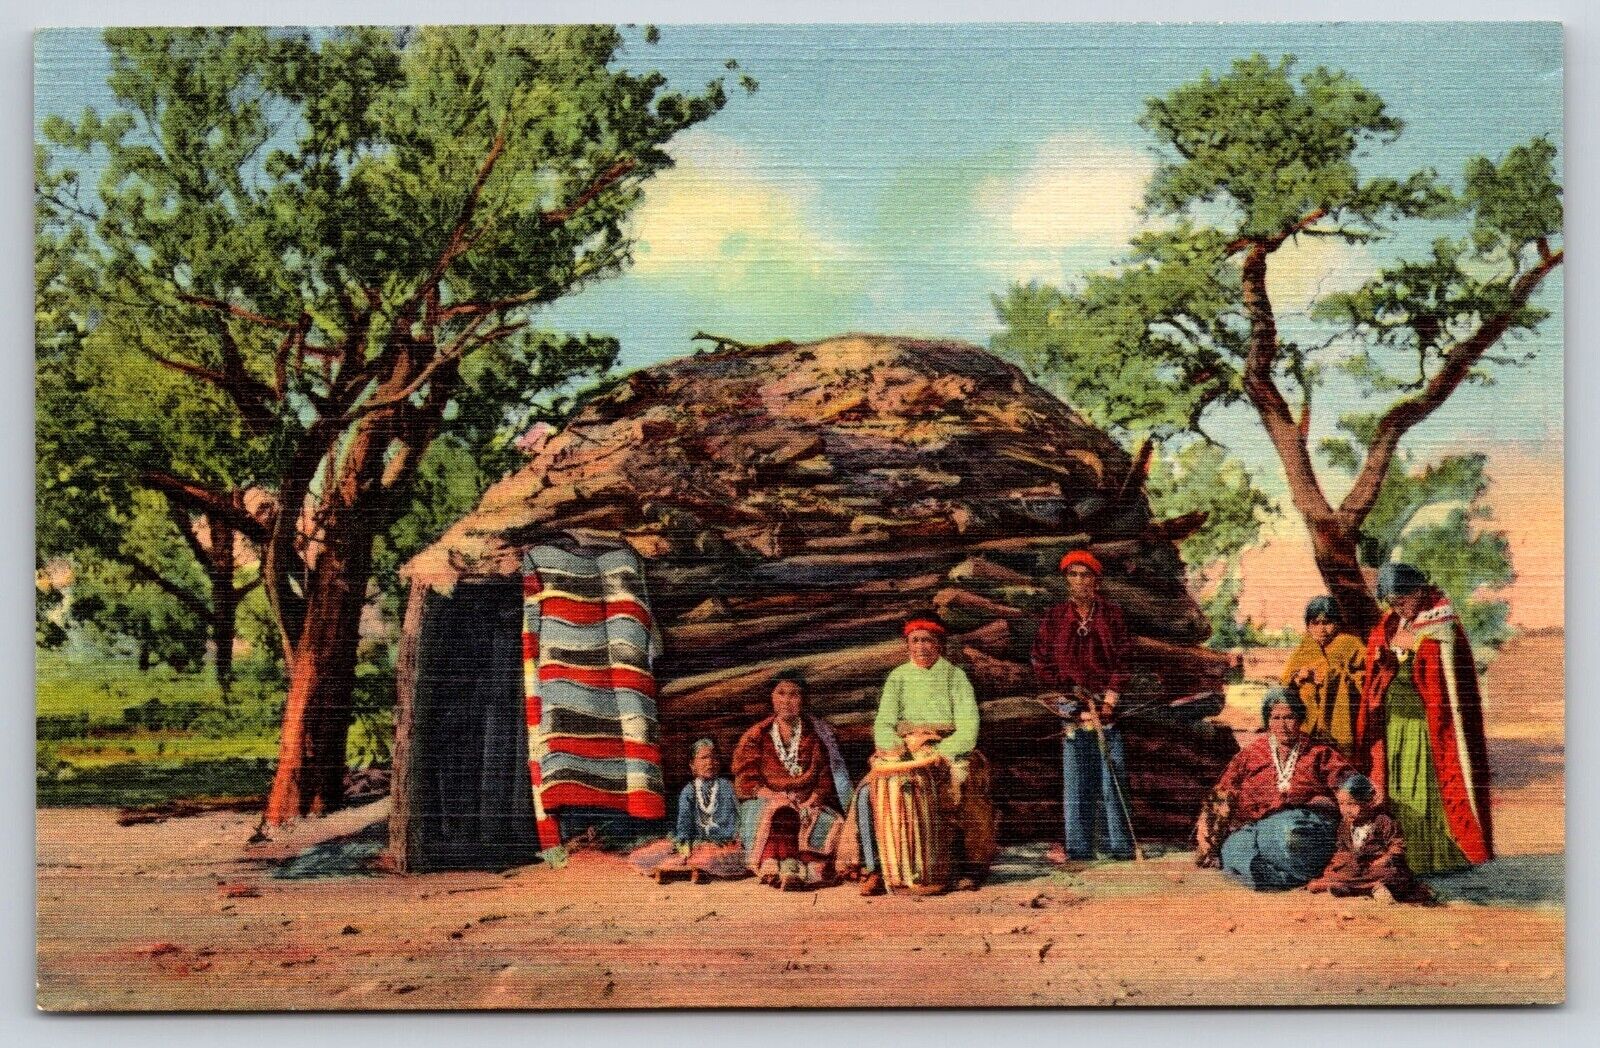 Navajo Indians On Reservation, Antique, Vintage Postcard